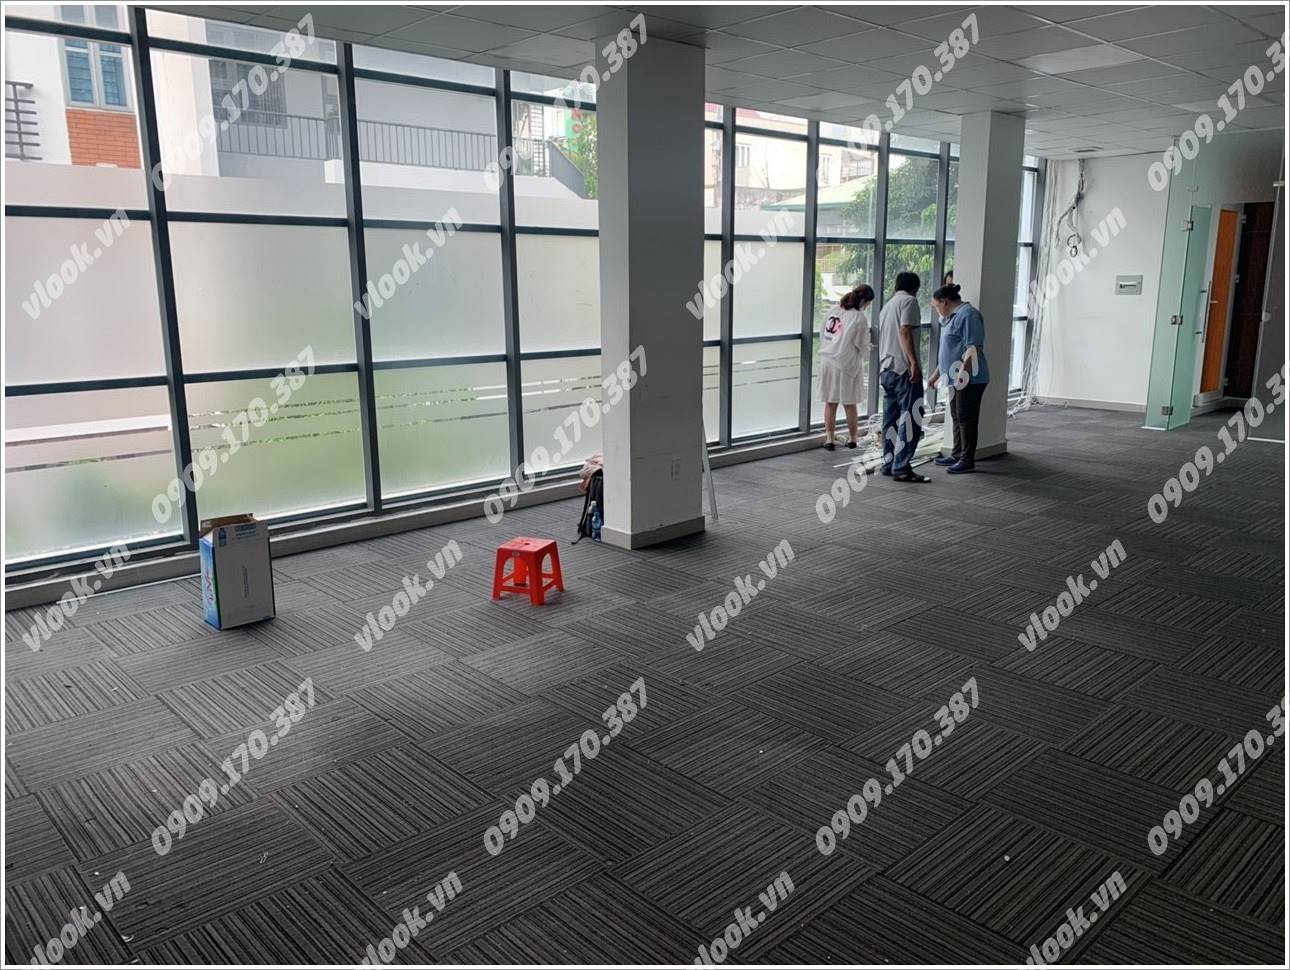 Cao ốc văn phòng cho thuê toà nhà V Smart Đường C18, Quận Tân Bình, TPHCM - vlook.vn